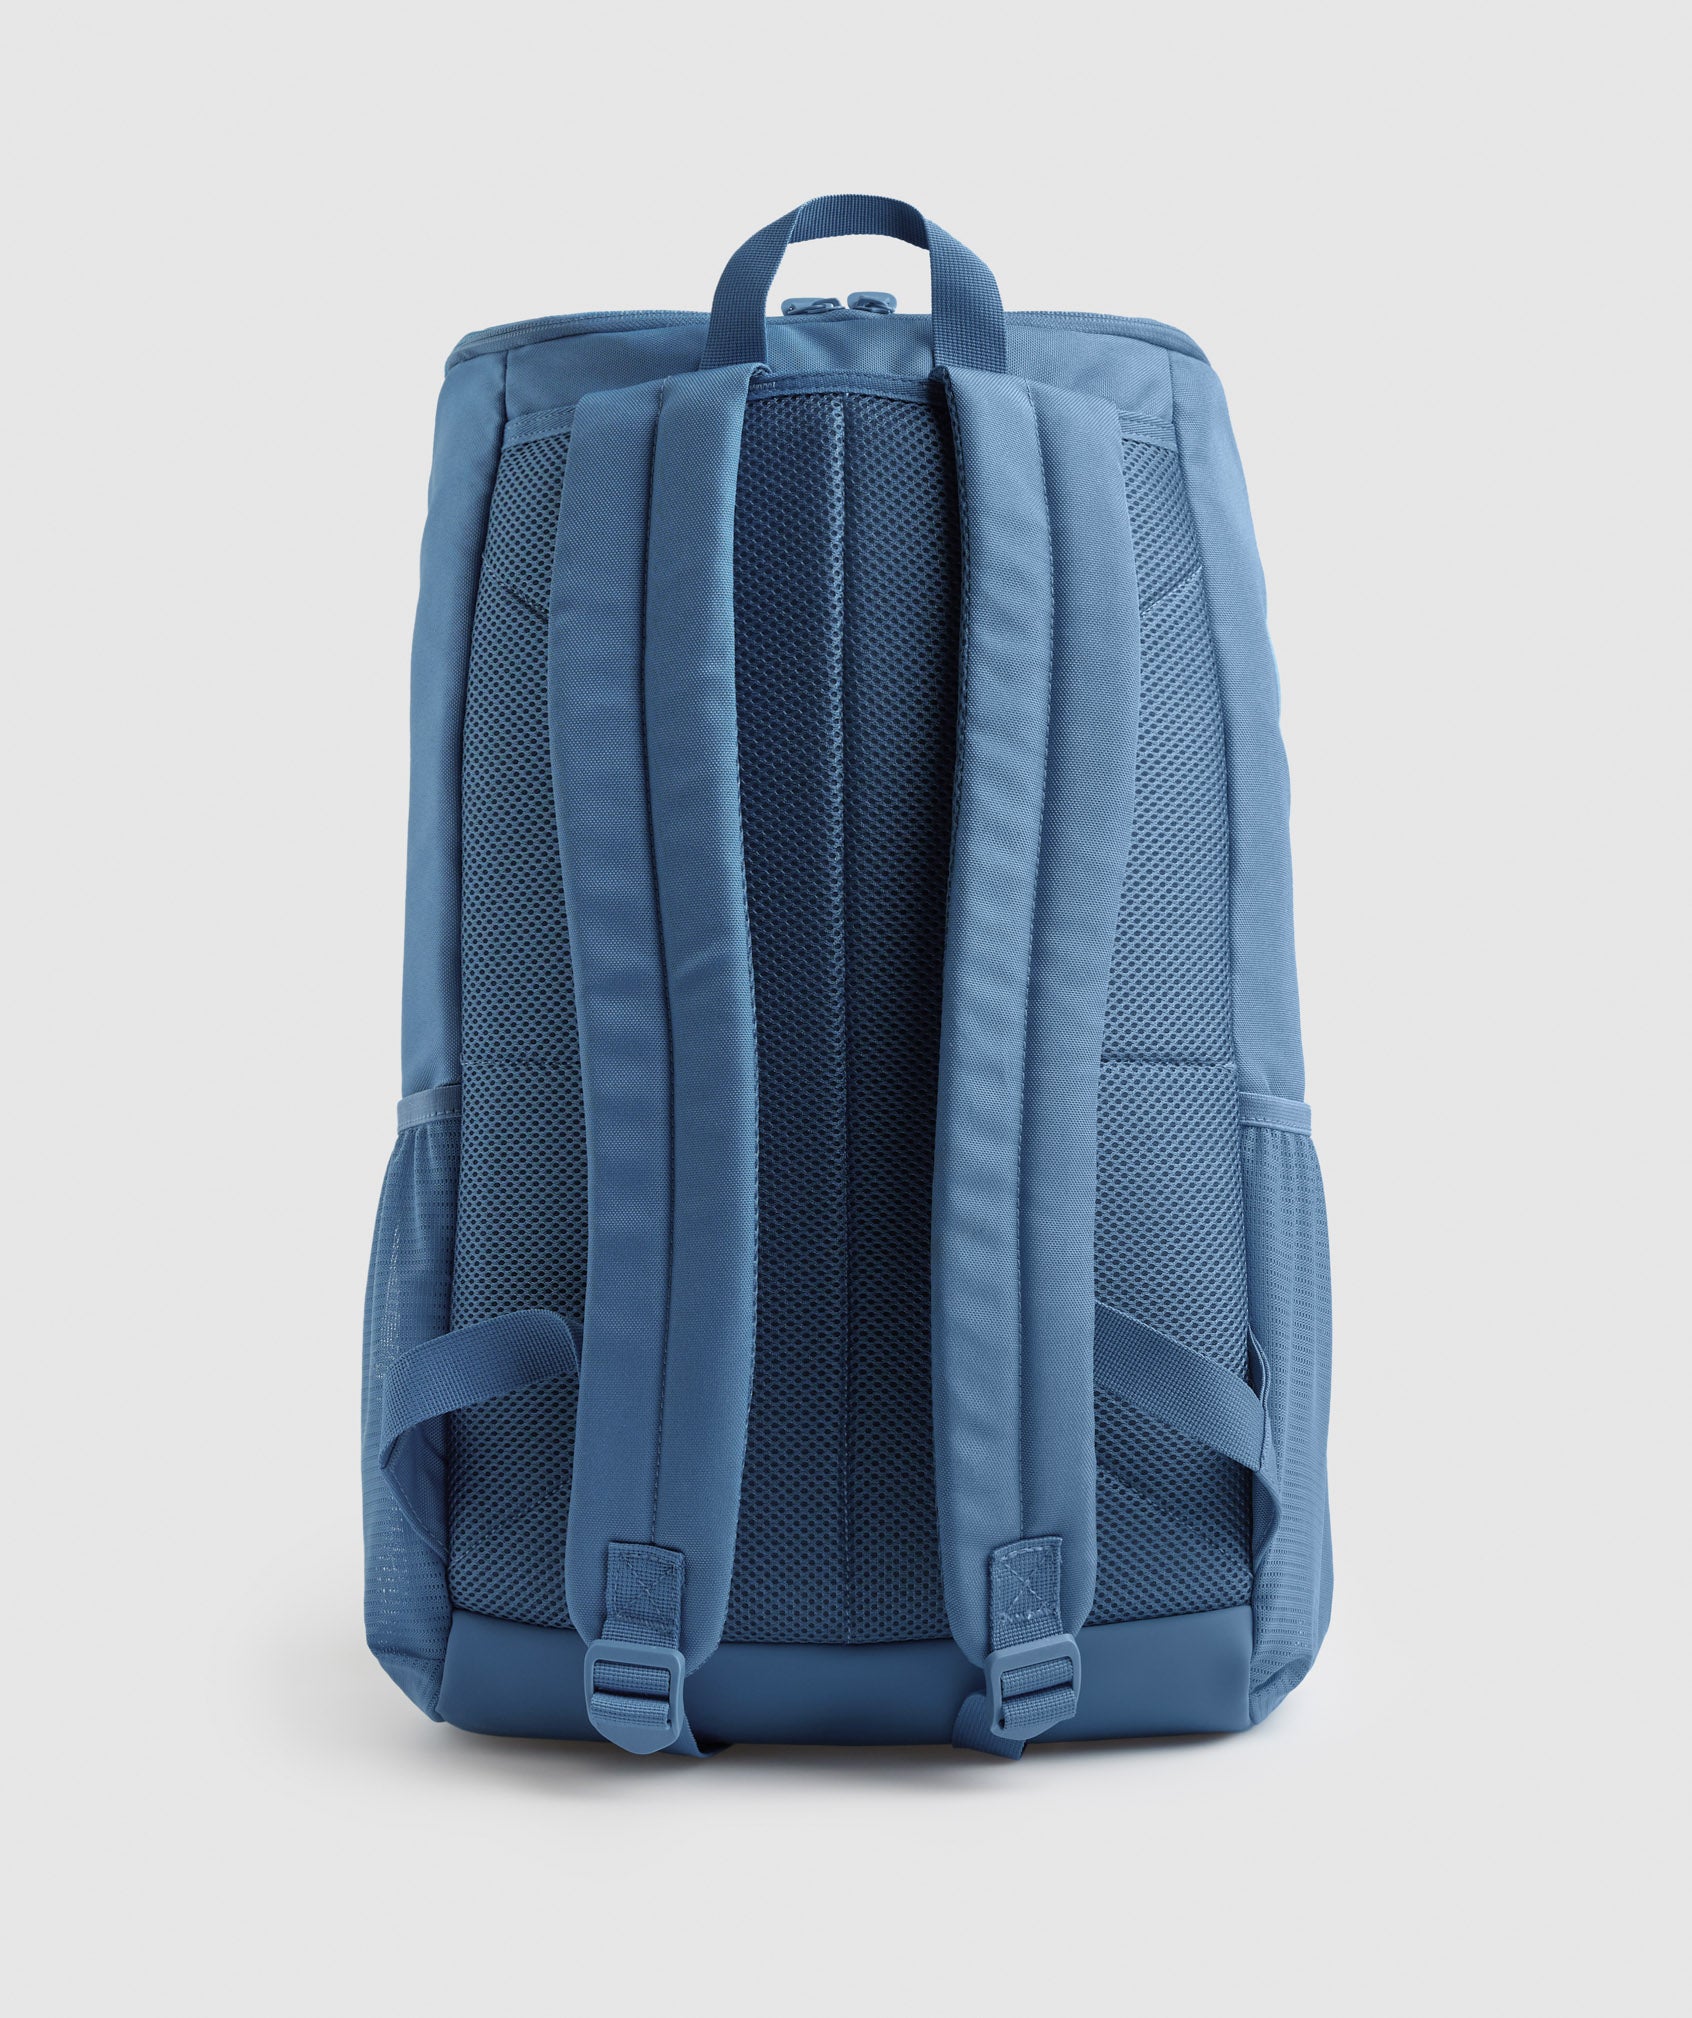 Sharkhead Backpack in Denim Blue